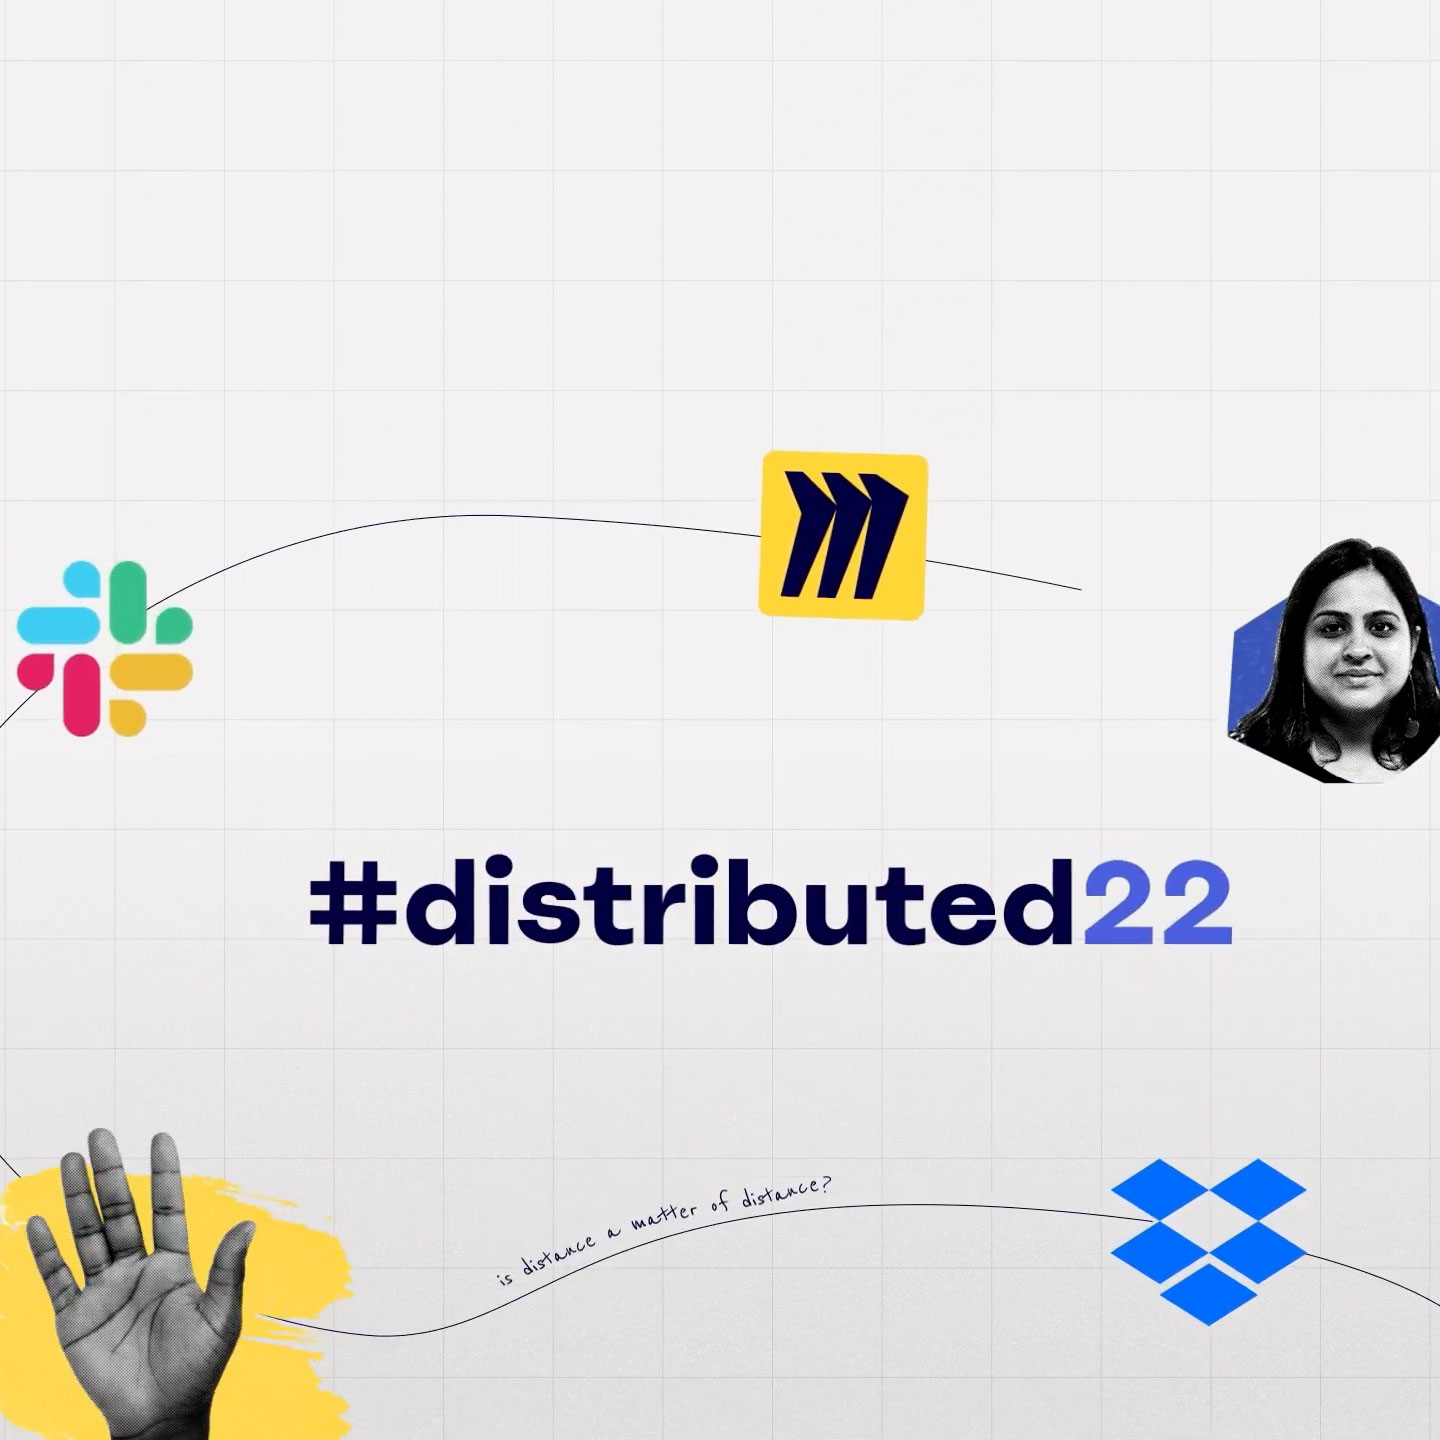 Titelkaart van #distributed22 evenement met logo's van Miro, Slack en Dropbox